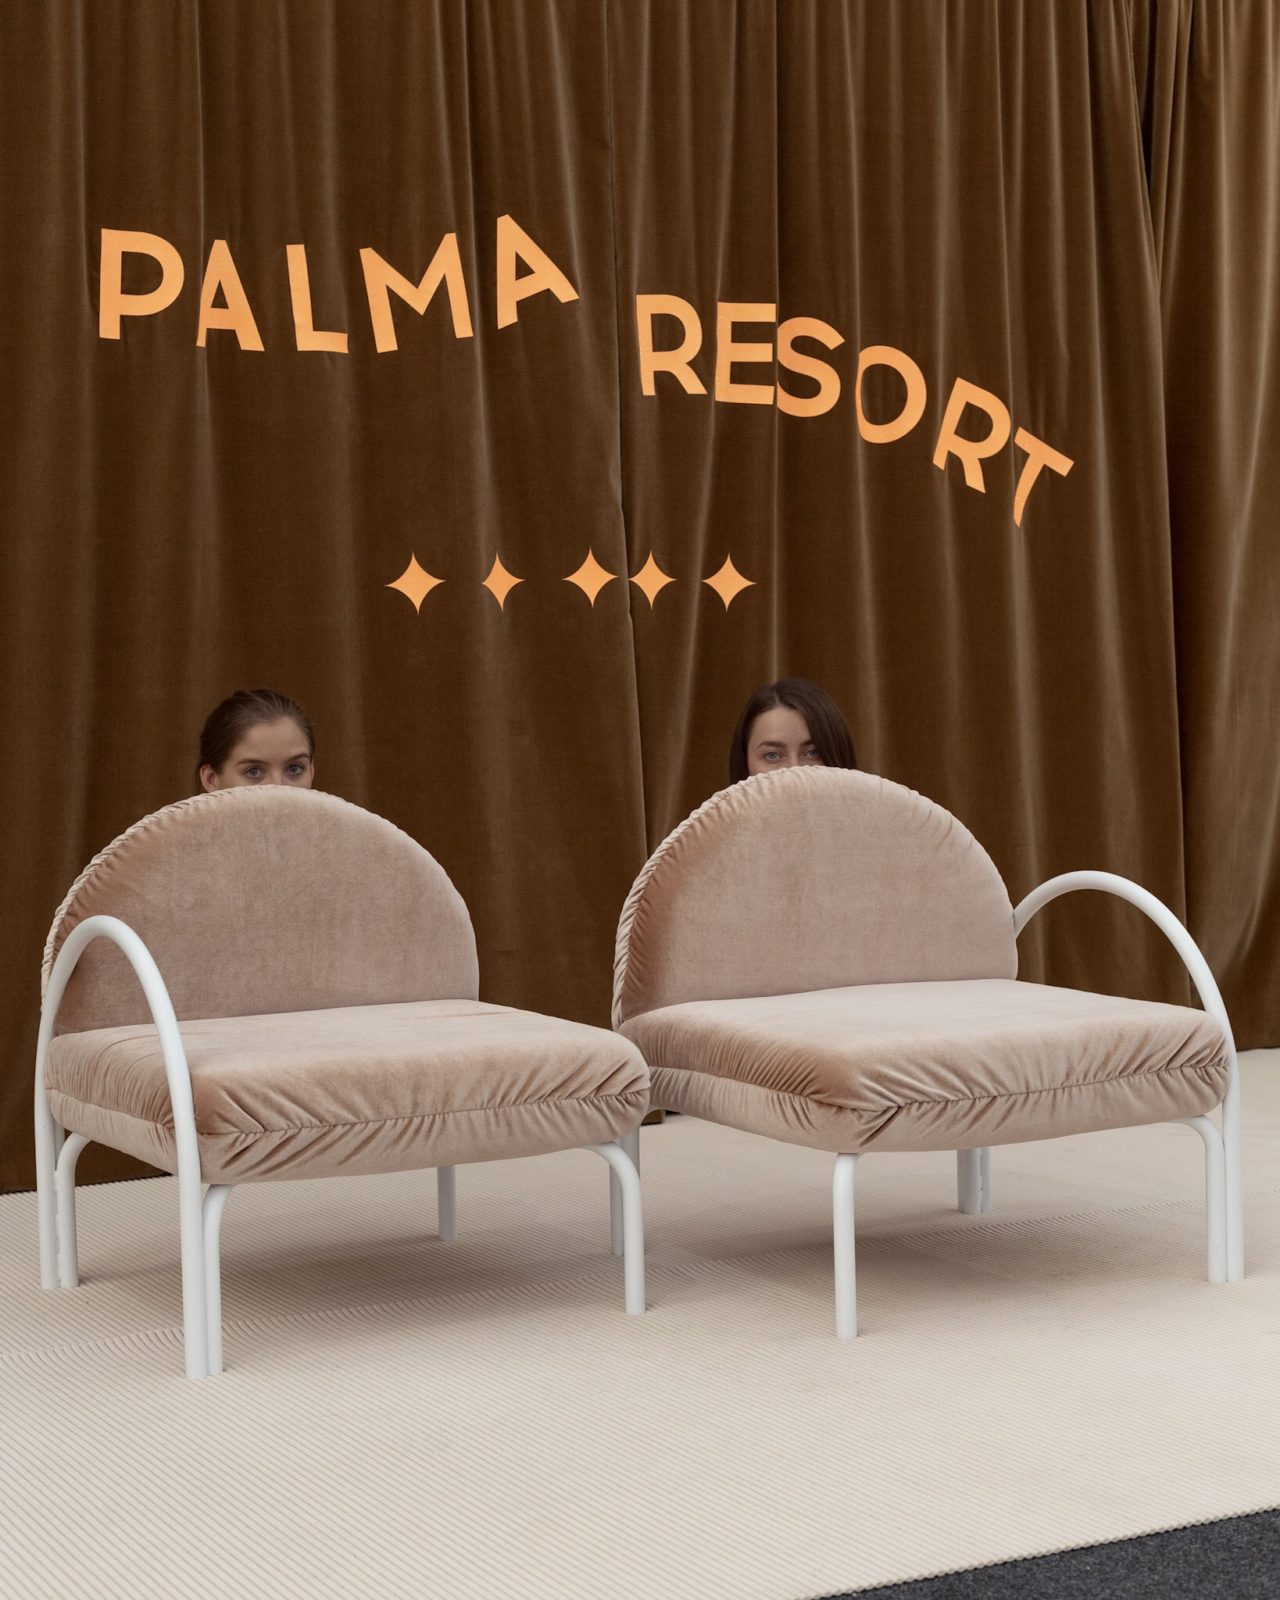 Le studio Palma de Alma rend hommage à l'esthétique des hôtels des années 90 avec leur collection de mobilier Resort.